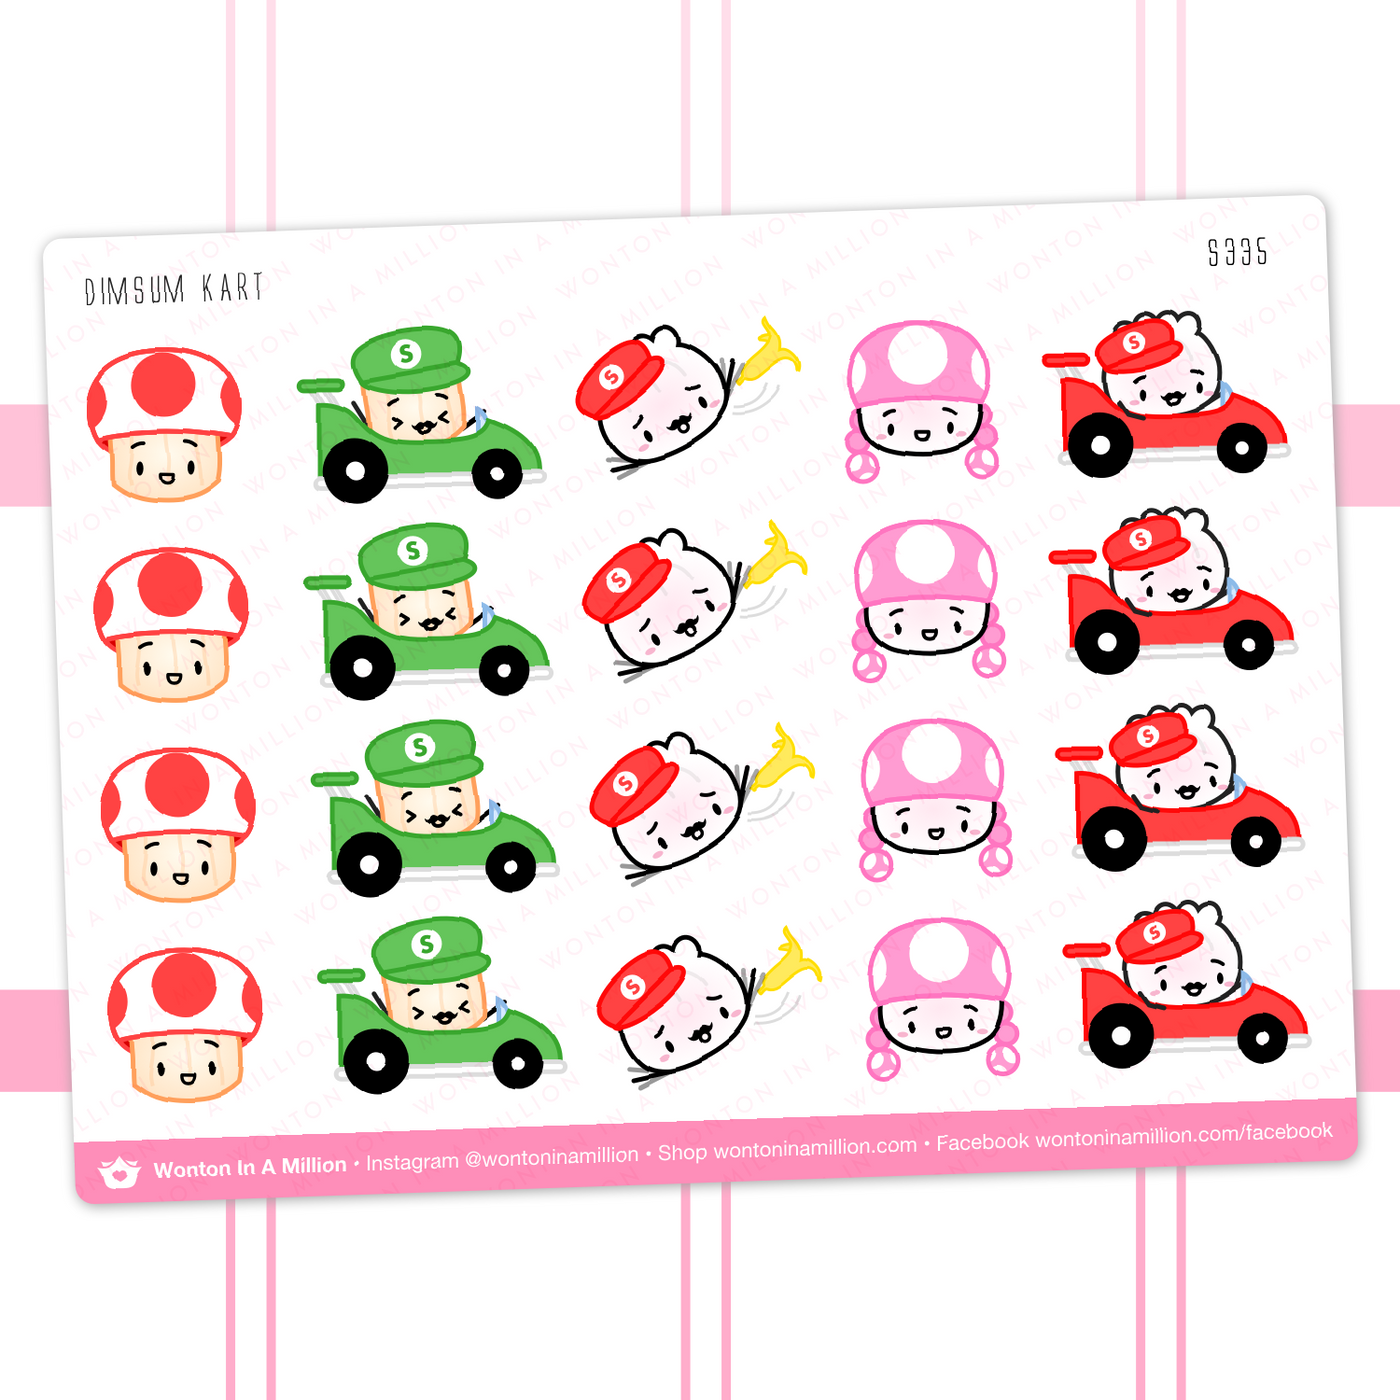 Dumpling (Mario) Kart Stickers